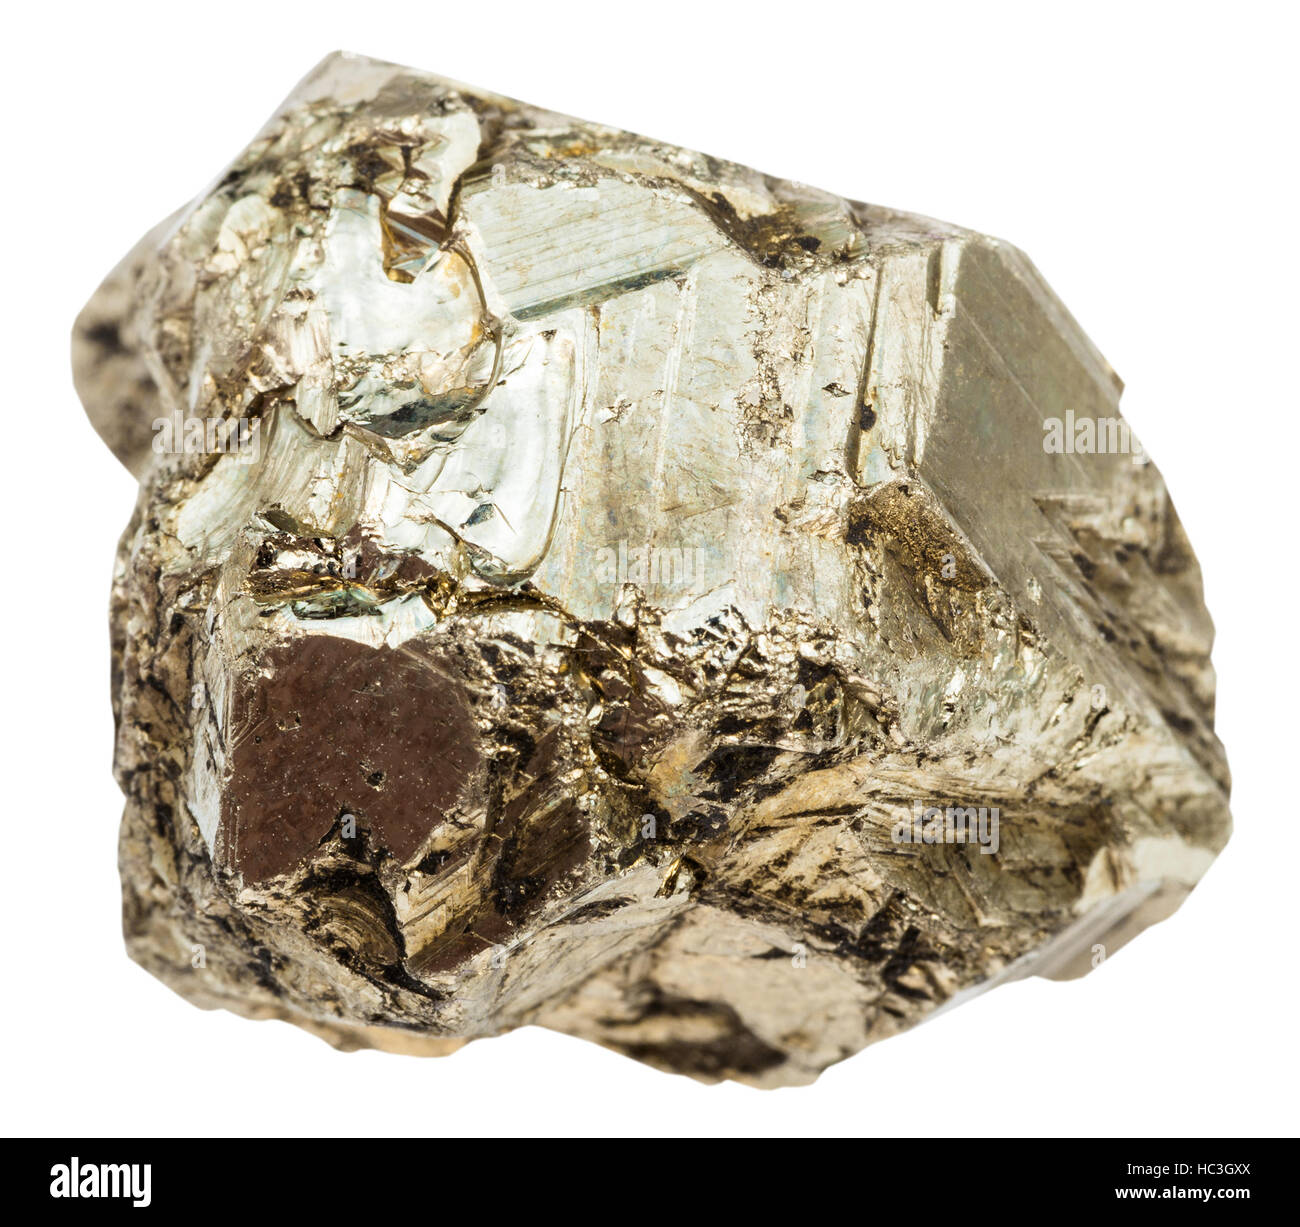 Makro-Aufnahmen der Probe der natürlichen Mineral - Kiesel aus Pyrit (Eisen-Pyrit, Katzengold) Stein isoliert auf weißem Hintergrund Stockfoto